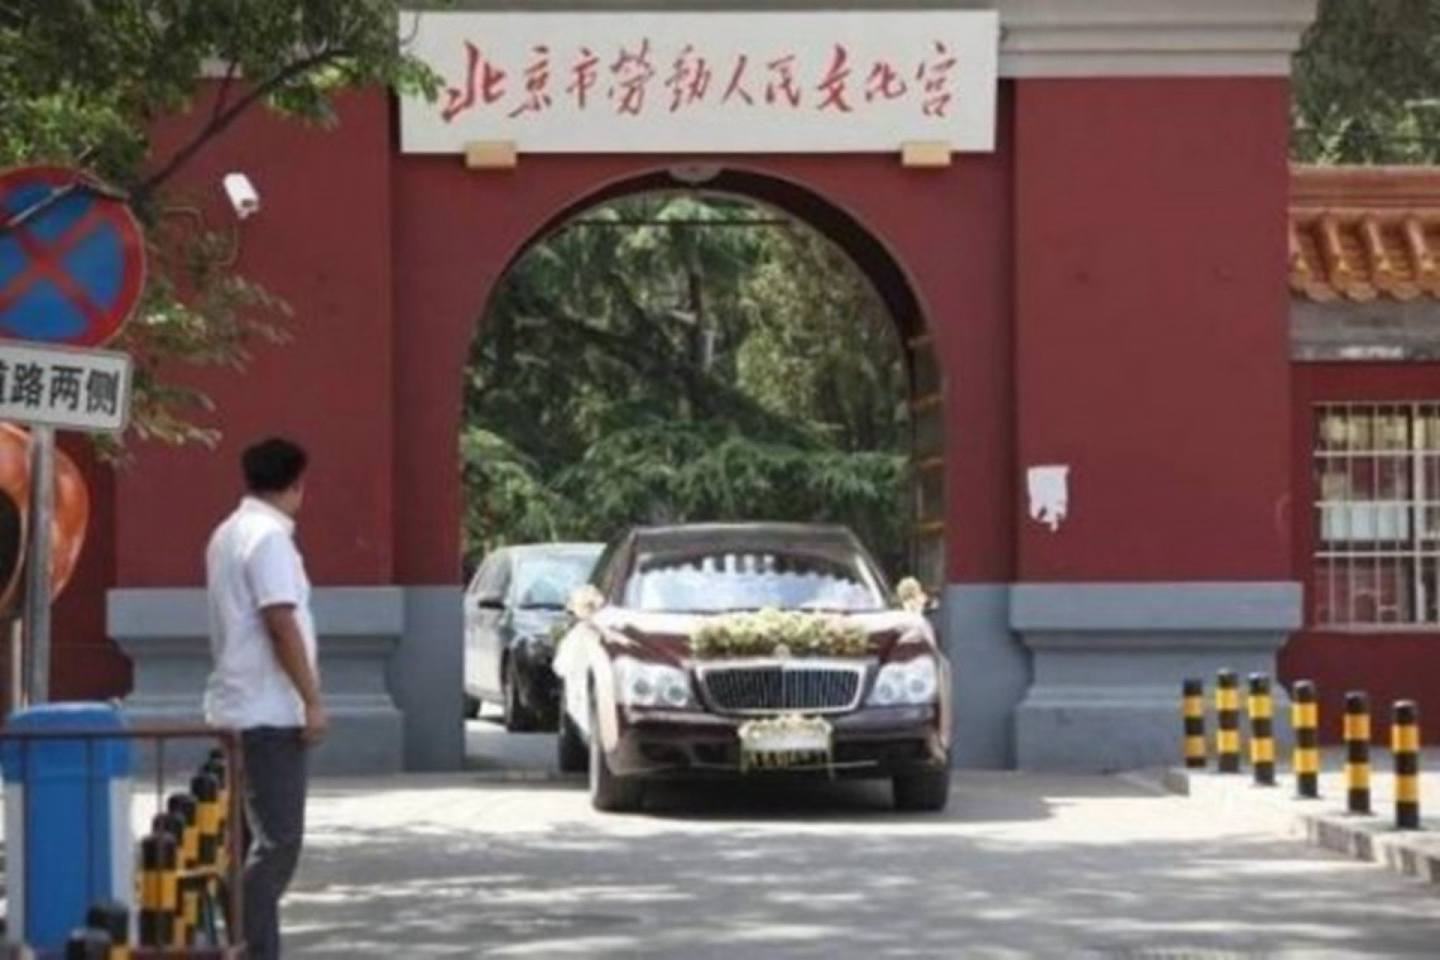 叶明子大婚，多辆婚车也进入“全国重点文物保护单位”北京太庙内部。（微博@hz张艳婷）